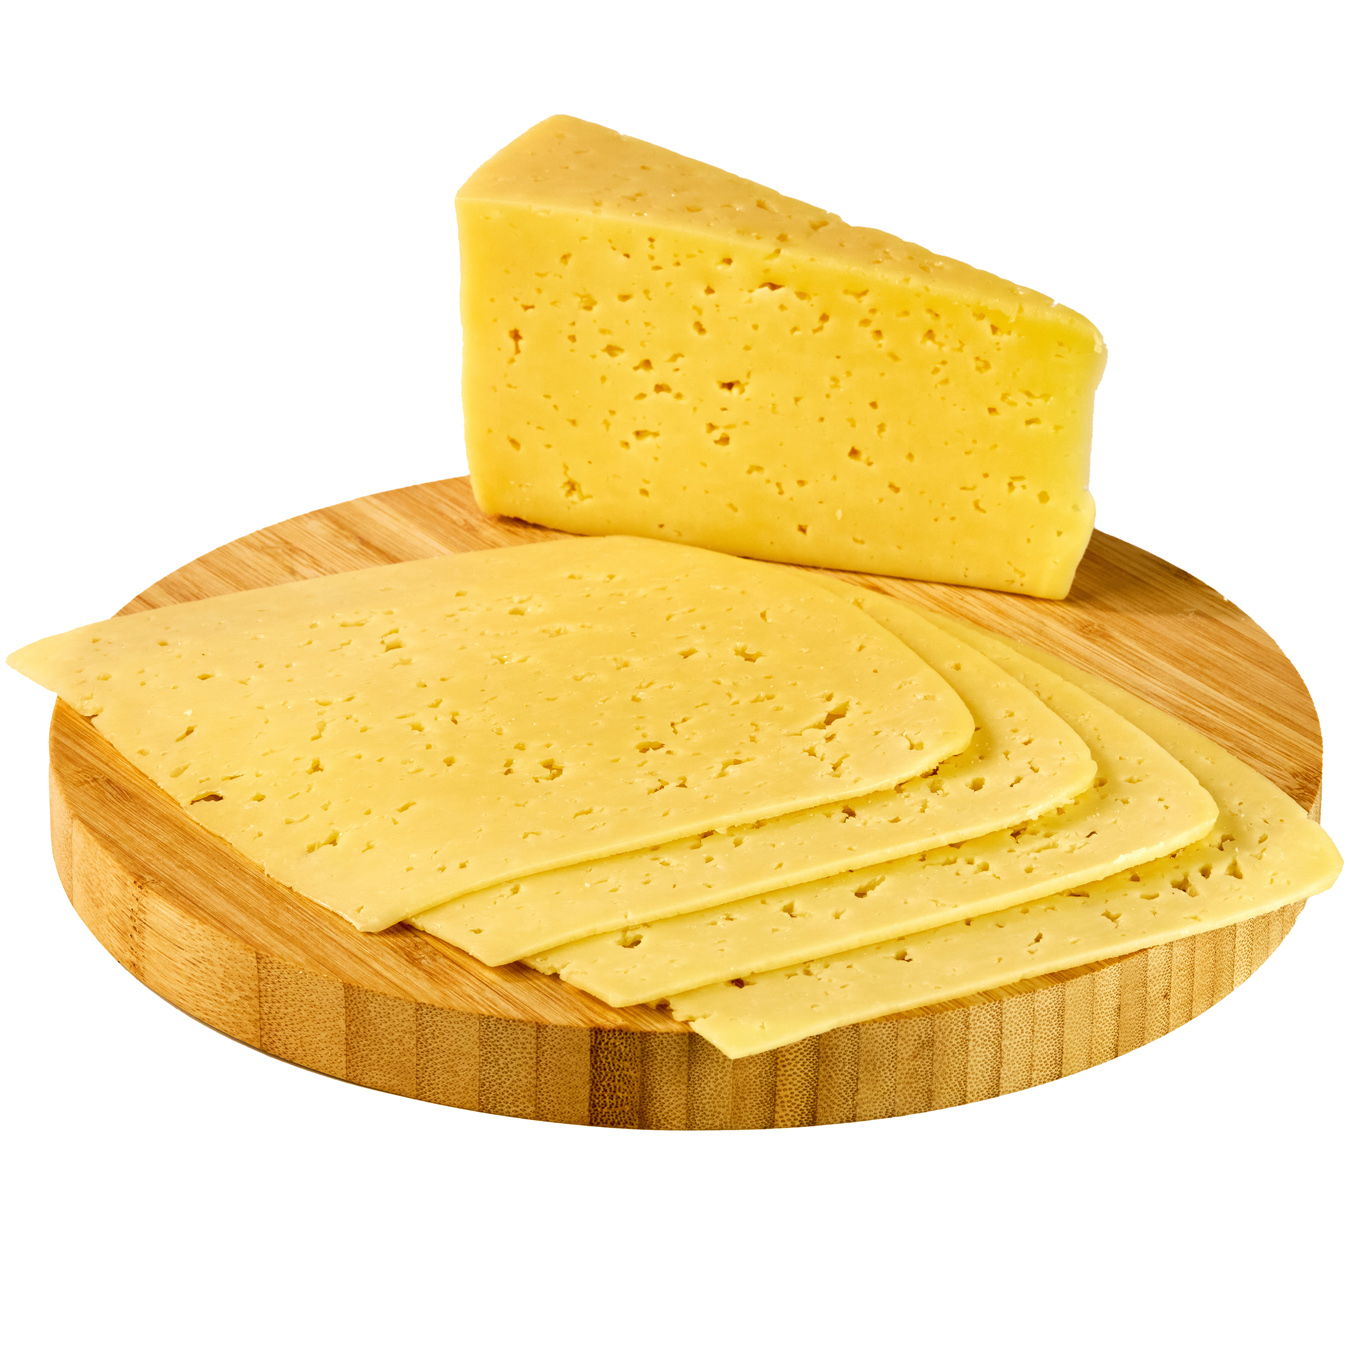 Novgorod-Siversky mild hard cheese 50%